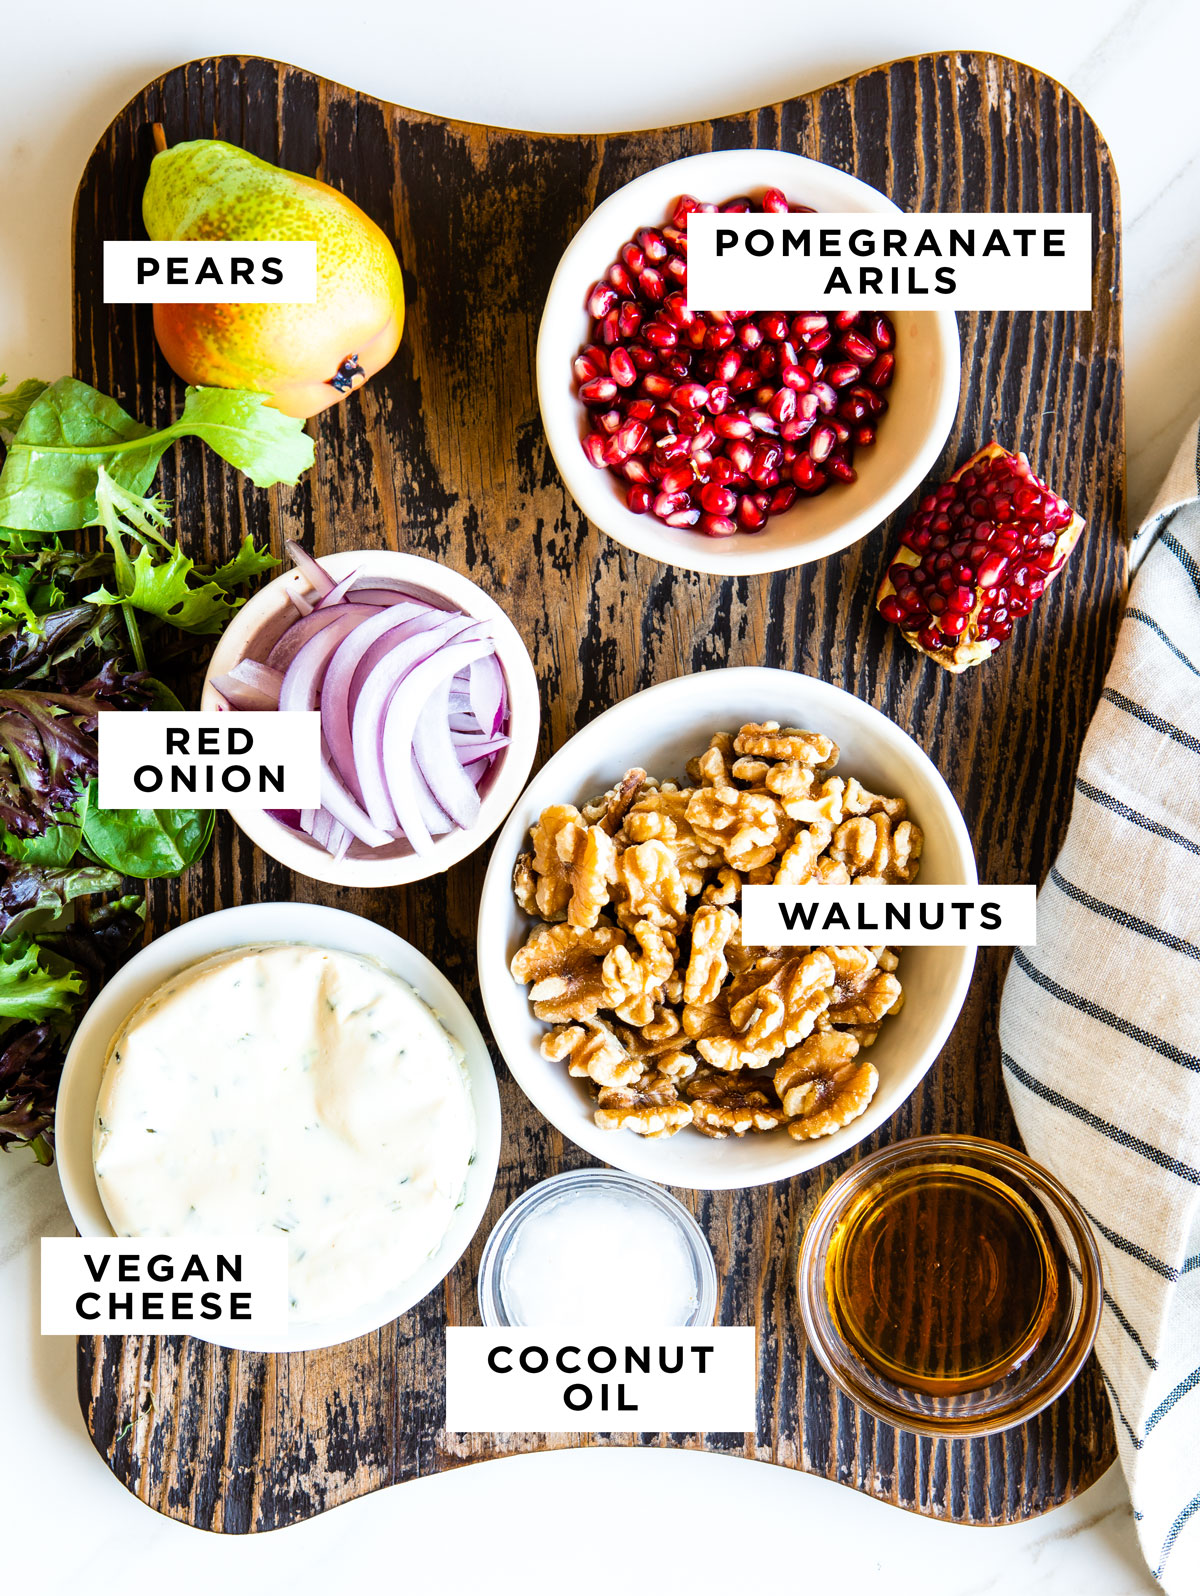 Gli ingredienti etichettati per un'insalata di pere includono pere, arilli di melograno, cipolla rossa, noci, formaggio vegano e olio di cocco. 